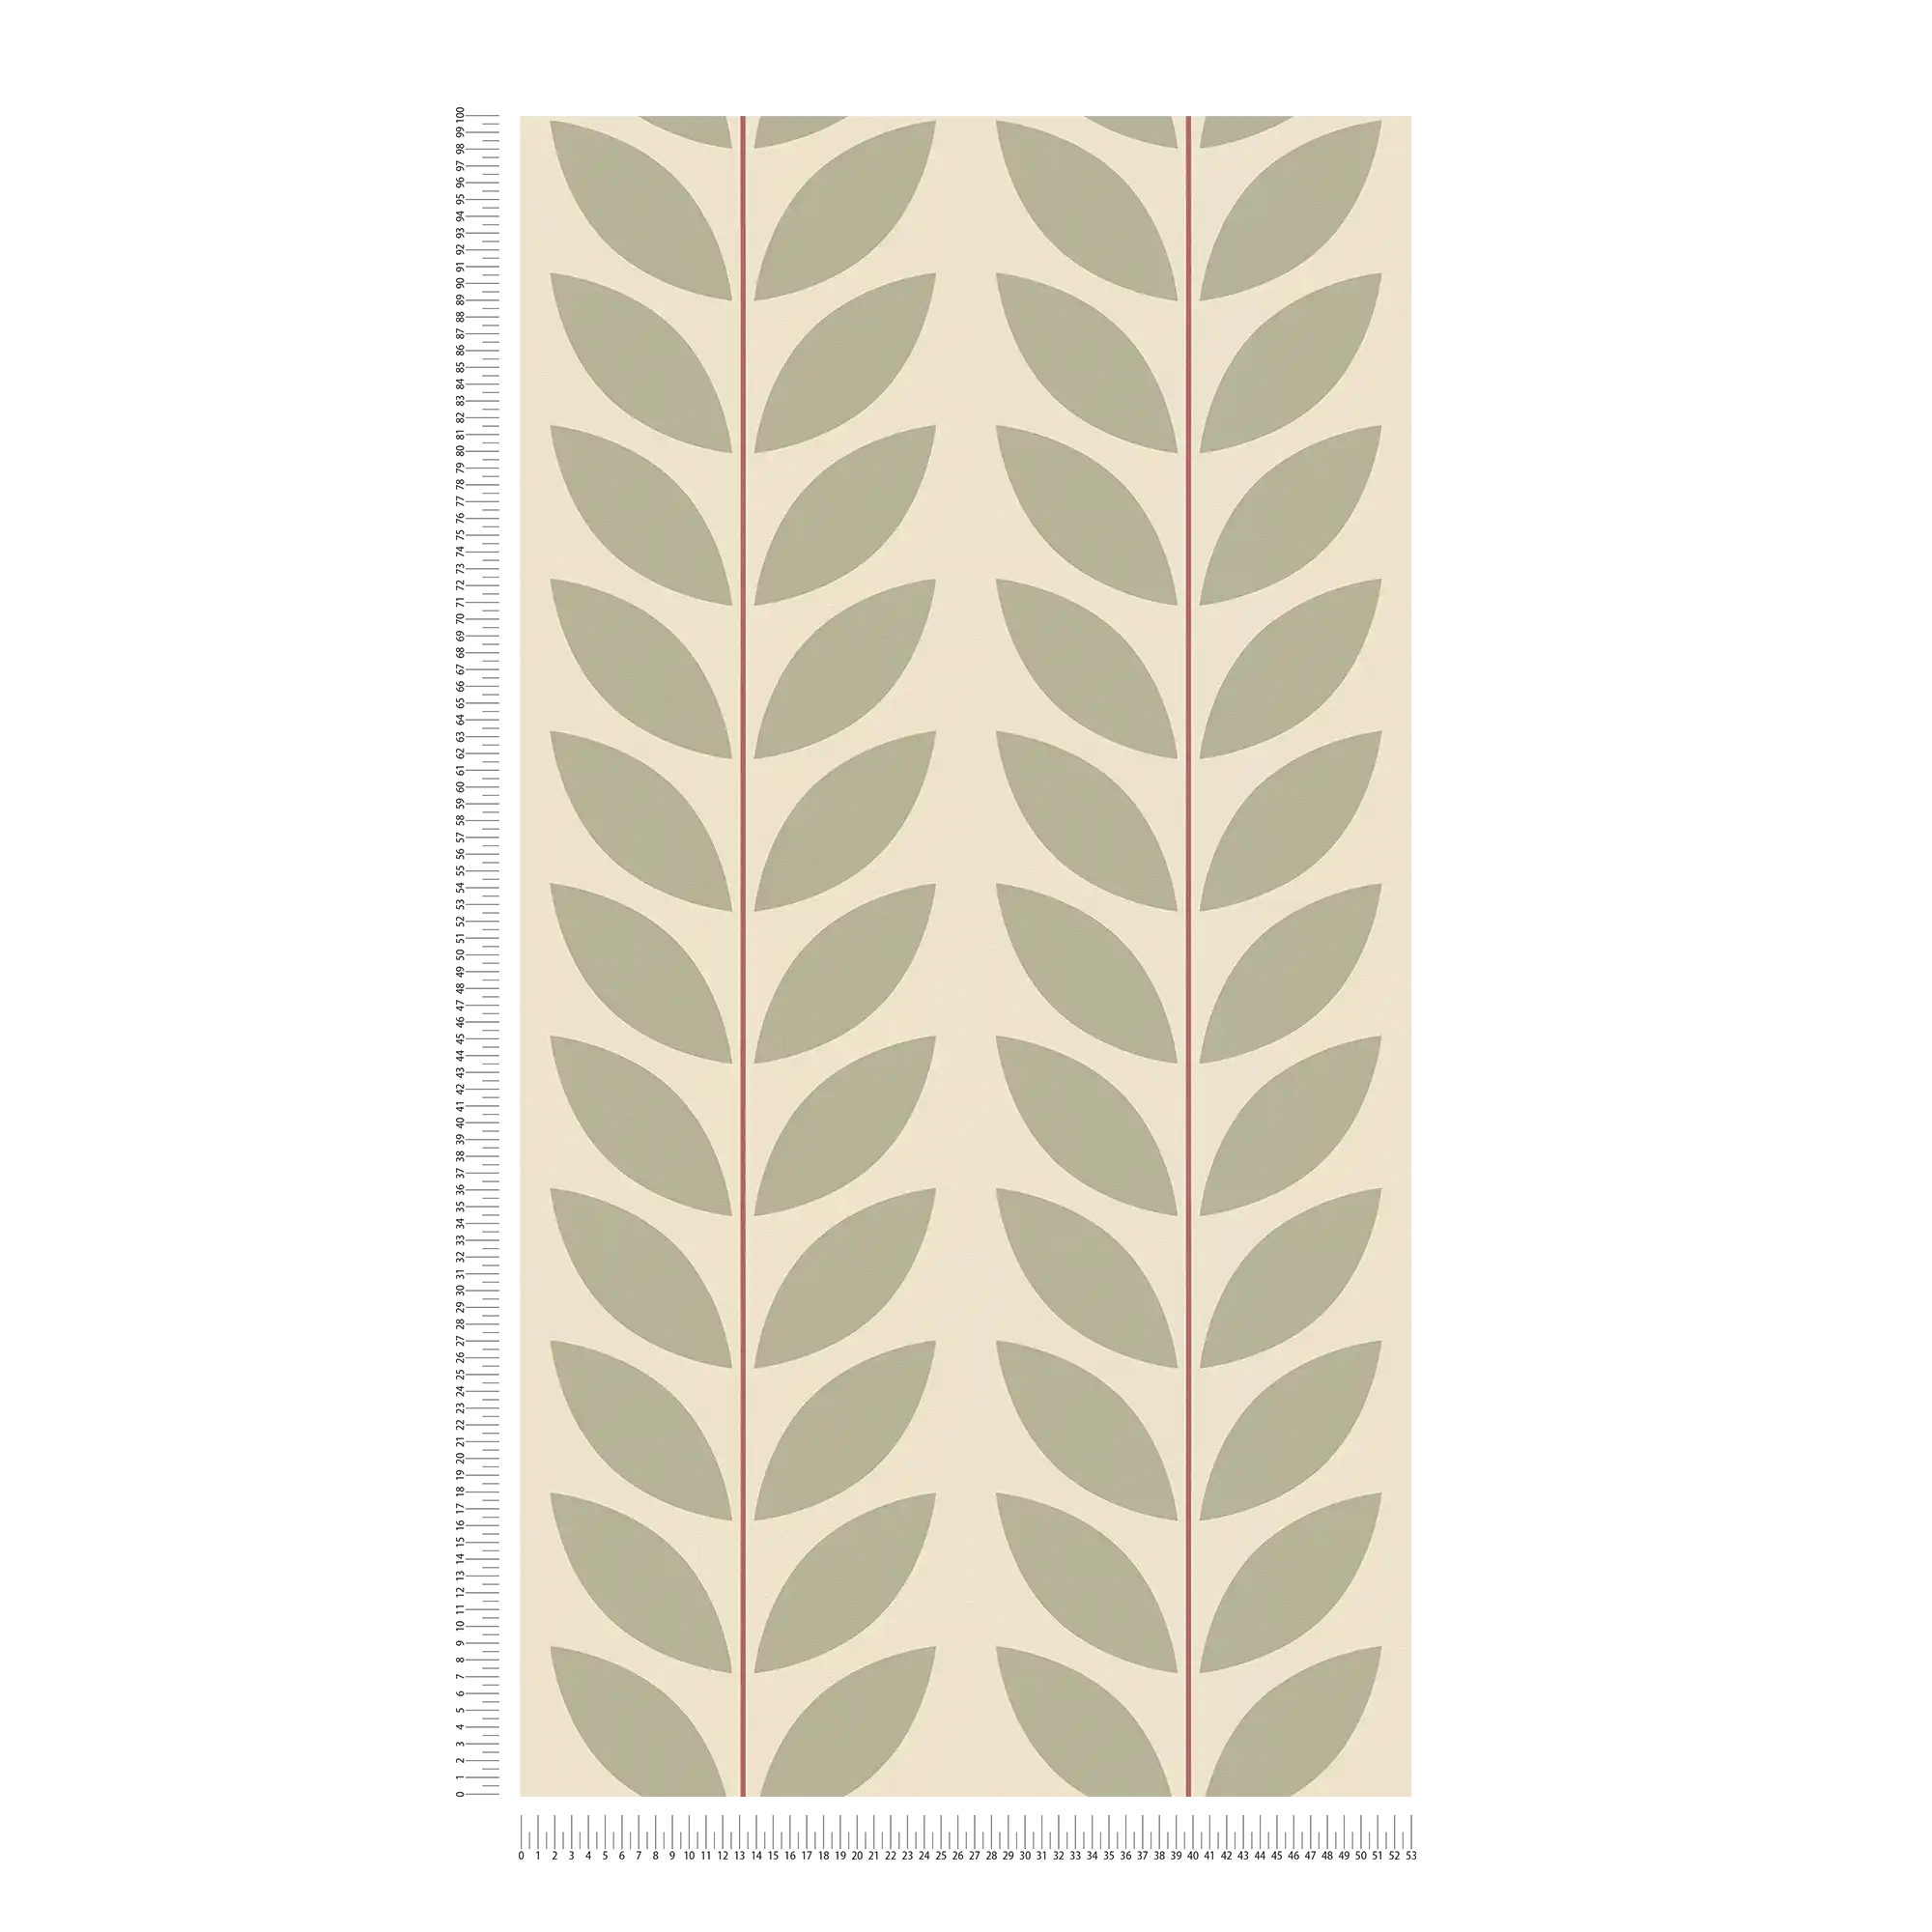             Bladpatroon vliesbehang in retrolook - beige, groen, rood
        